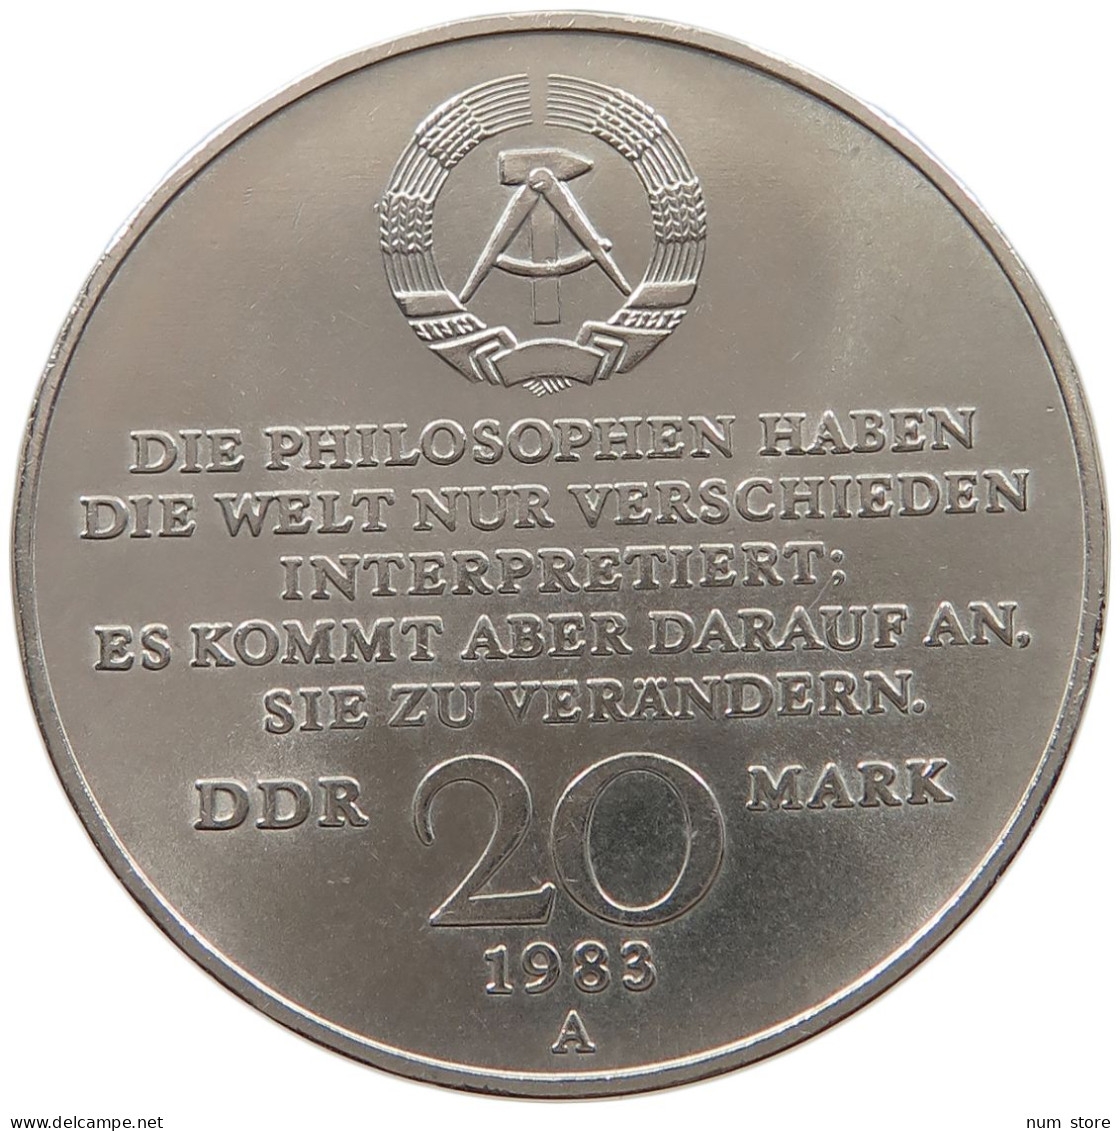 GERMANY DDR 20 MARK 1983 Karl Marx #a060 0537 - 20 Marcos